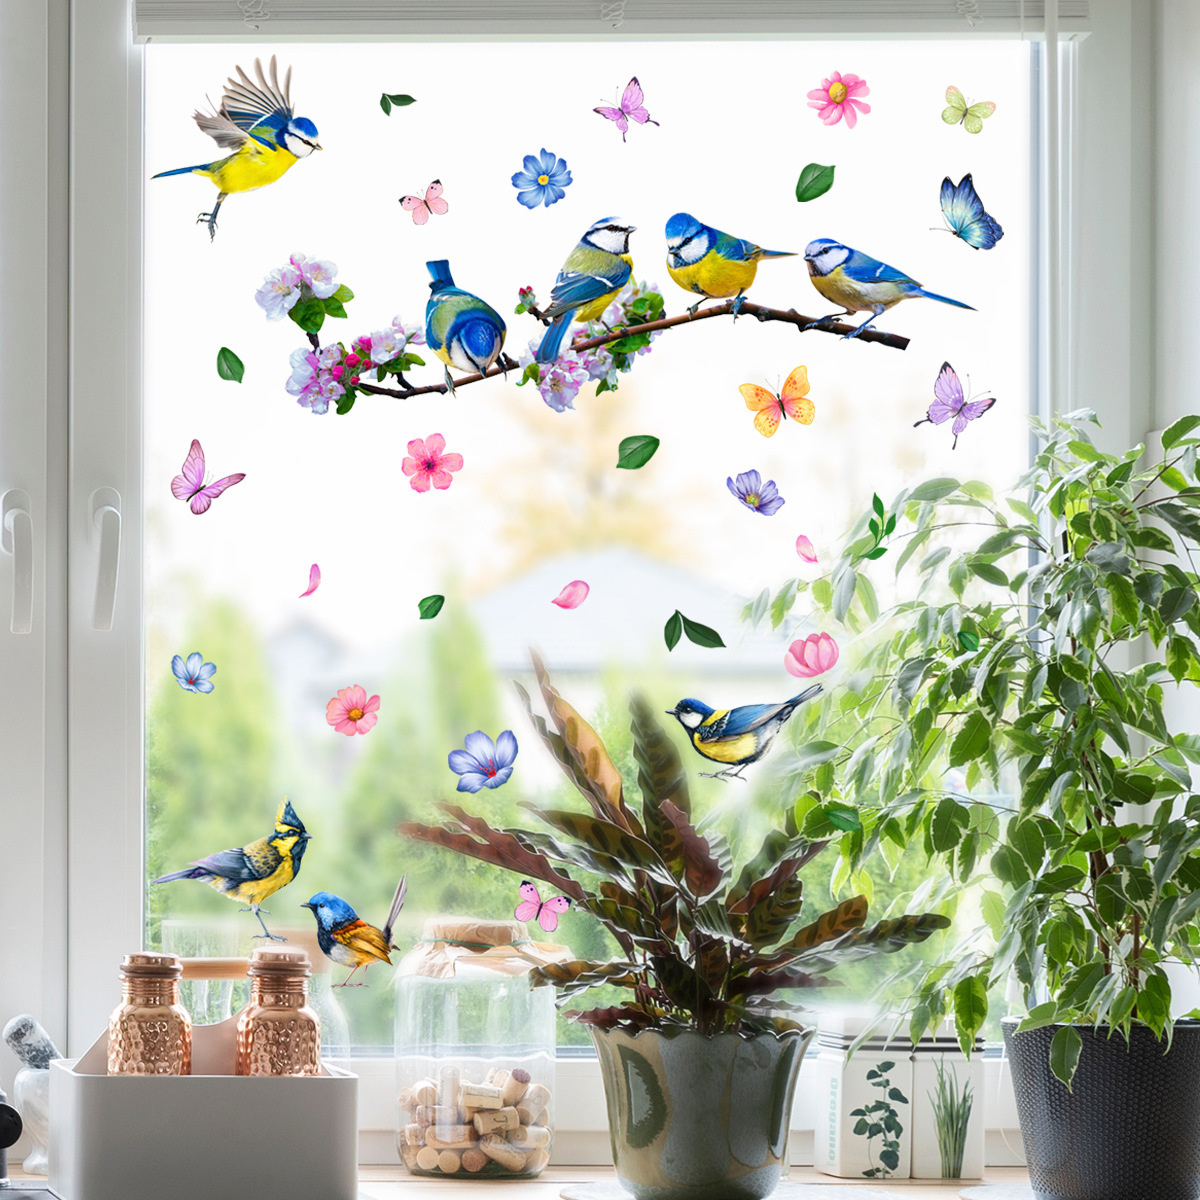 Raamsticker zelfklevend vogels op tak met vlinders, dubbelzijdig bedrukt.